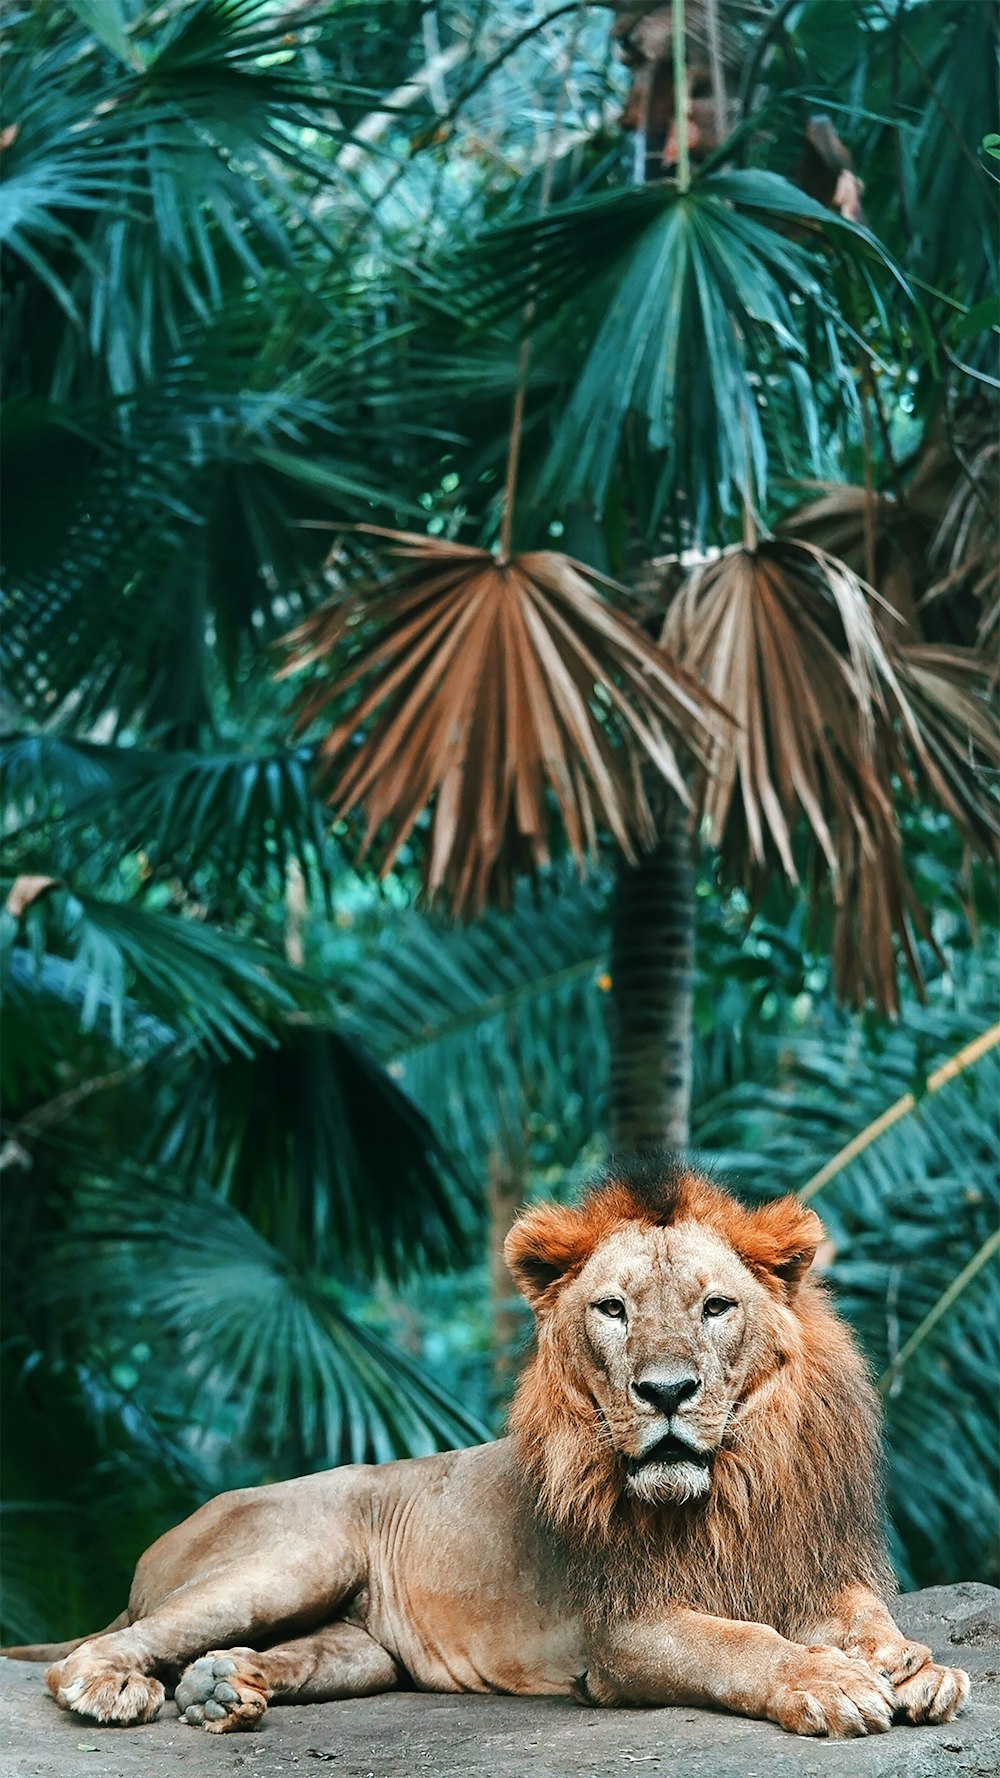 緑の葉の茶色のライオン